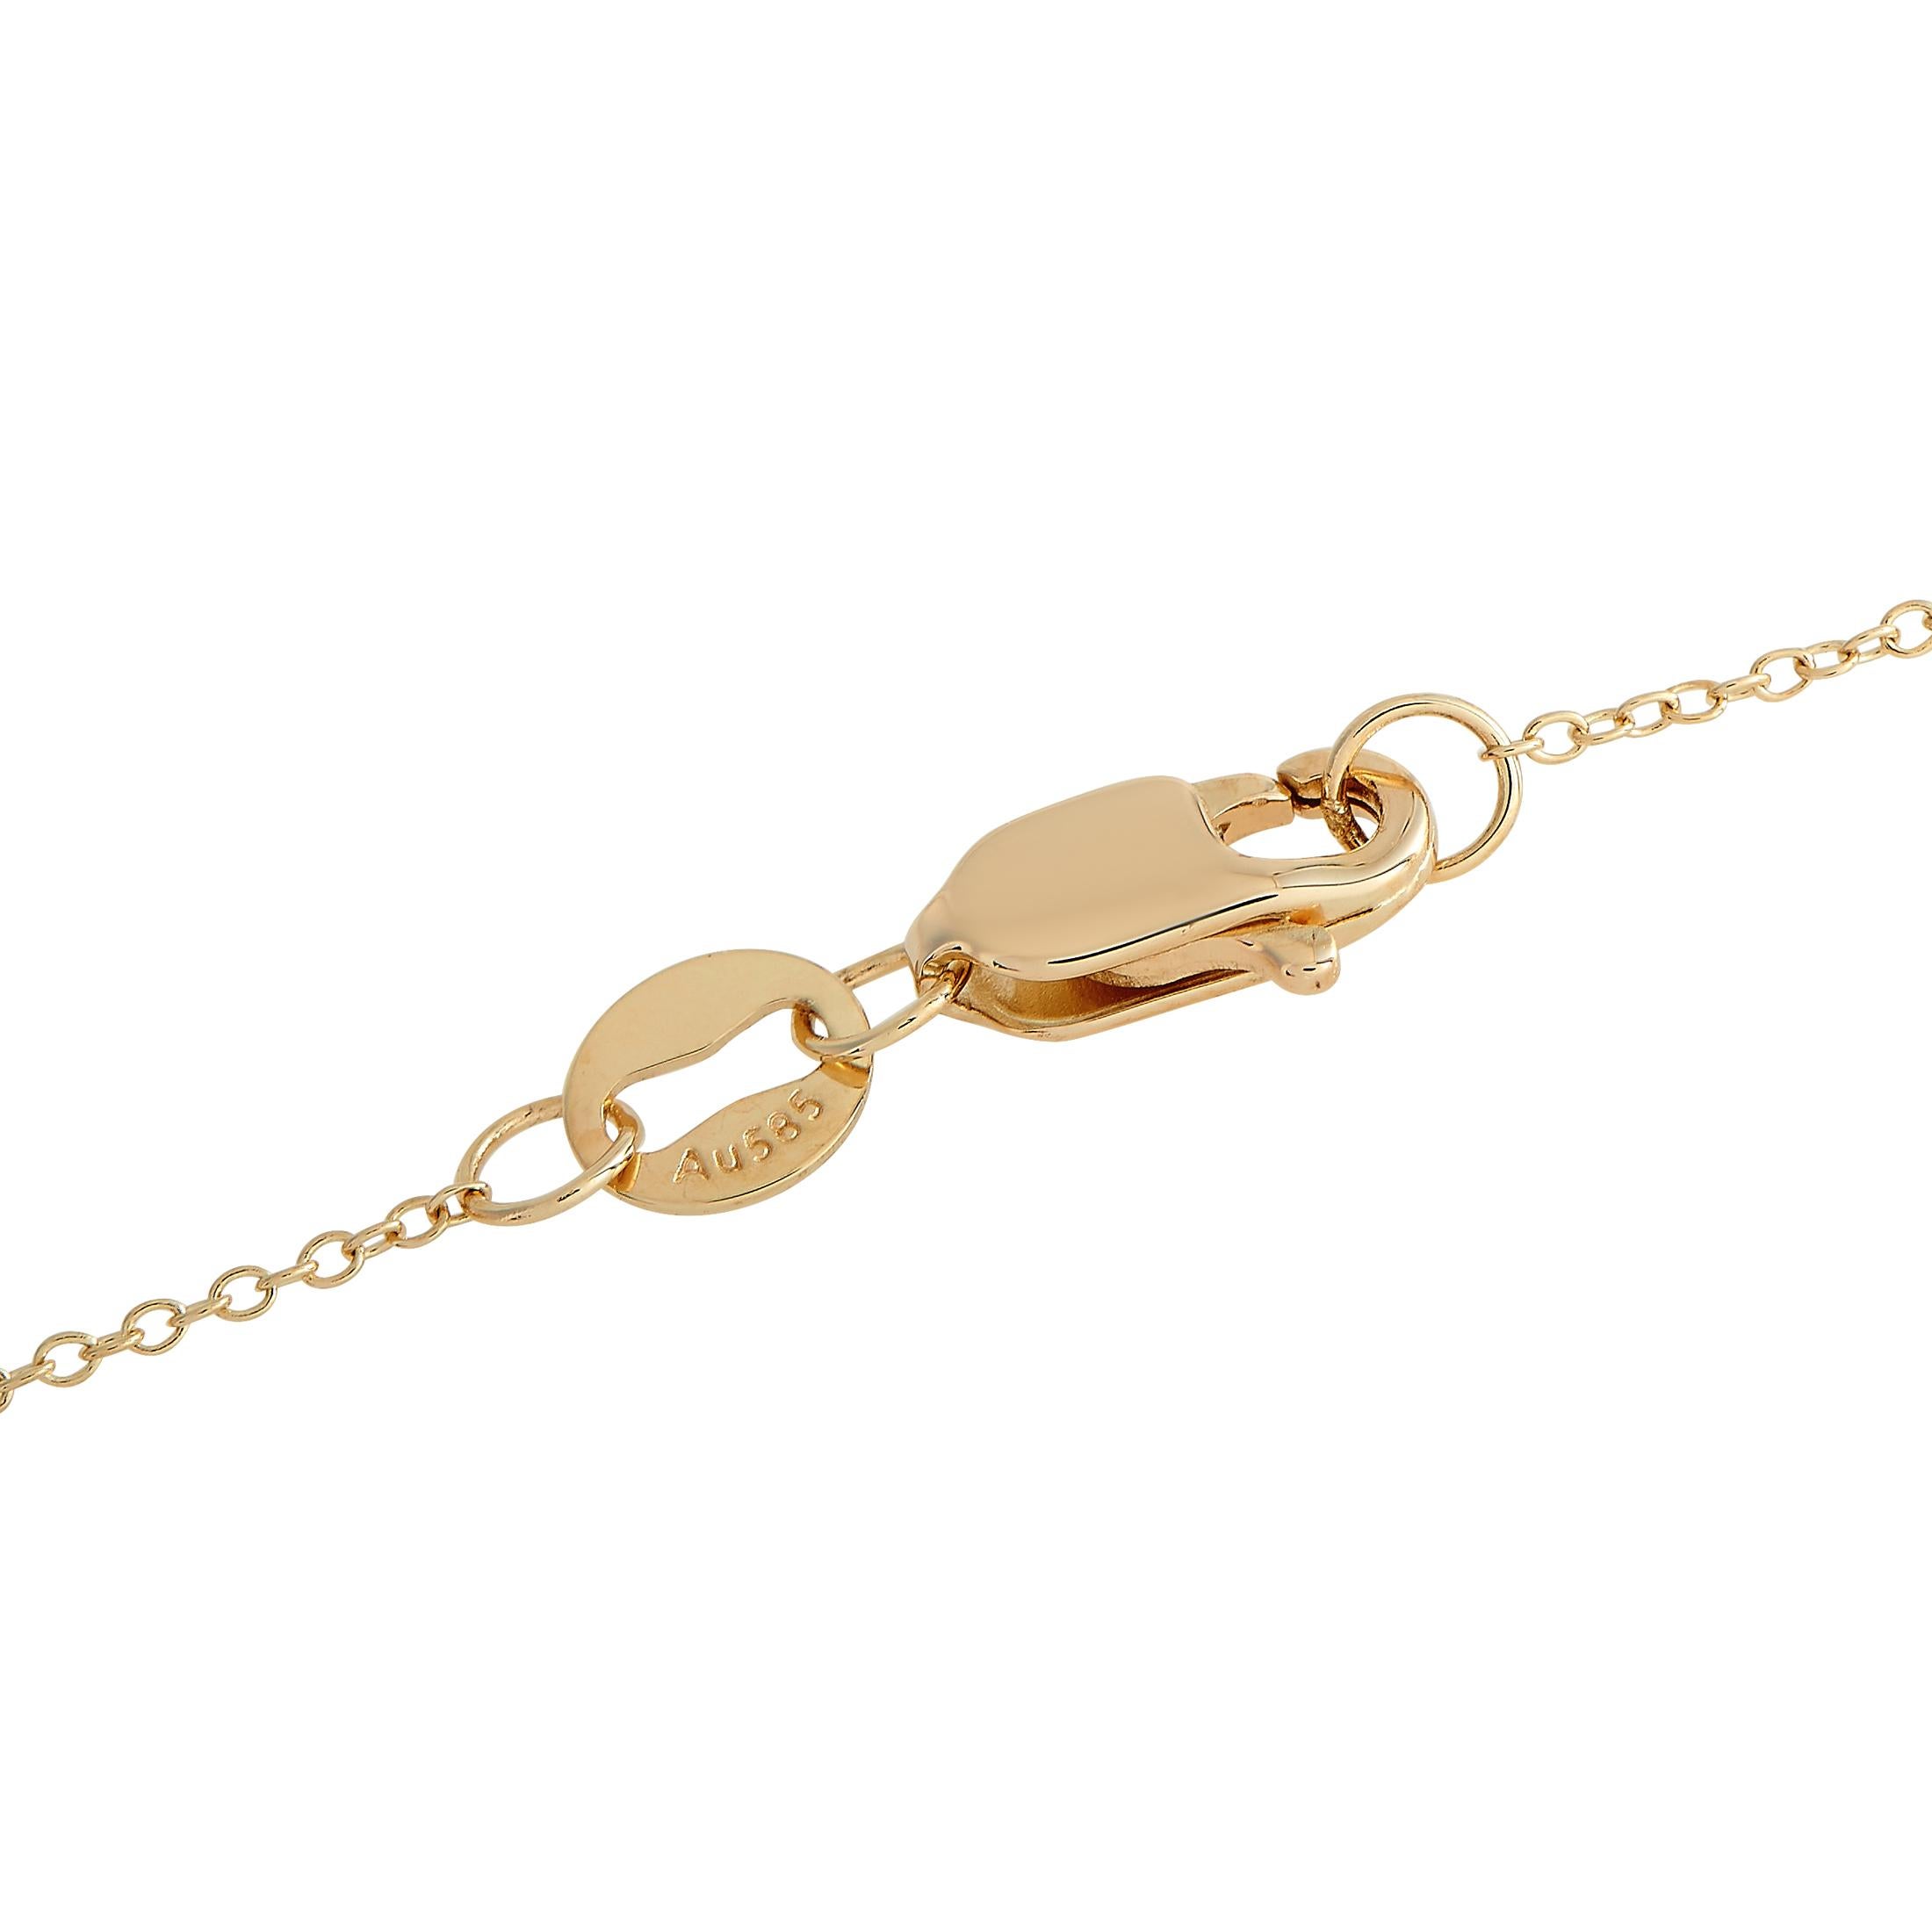 Diese sorgfältig gefertigte Halskette aus 14 Karat Gelbgold ist schlicht, elegant und unaufdringlich. In der Mitte der 16-köpfigen Kette befindet sich ein tropfenförmiger Anhänger, der dank der eingesetzten Diamanten von insgesamt 0,10 Karat zum